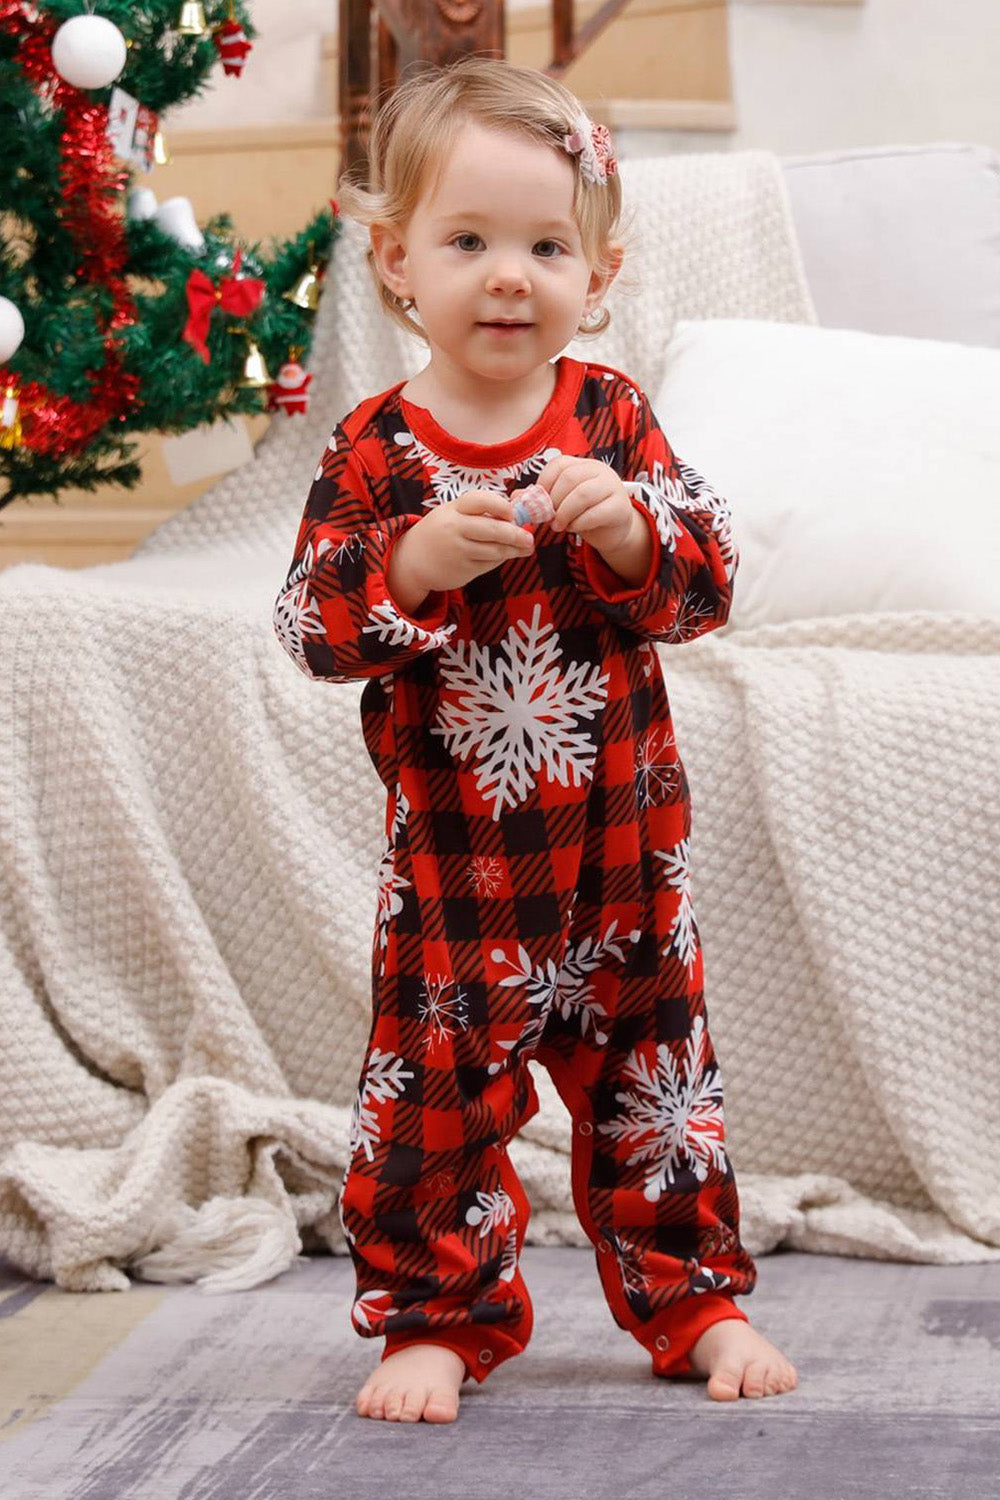 Pijama navideño familiar a juego a cuadros rojos con copo de nieve